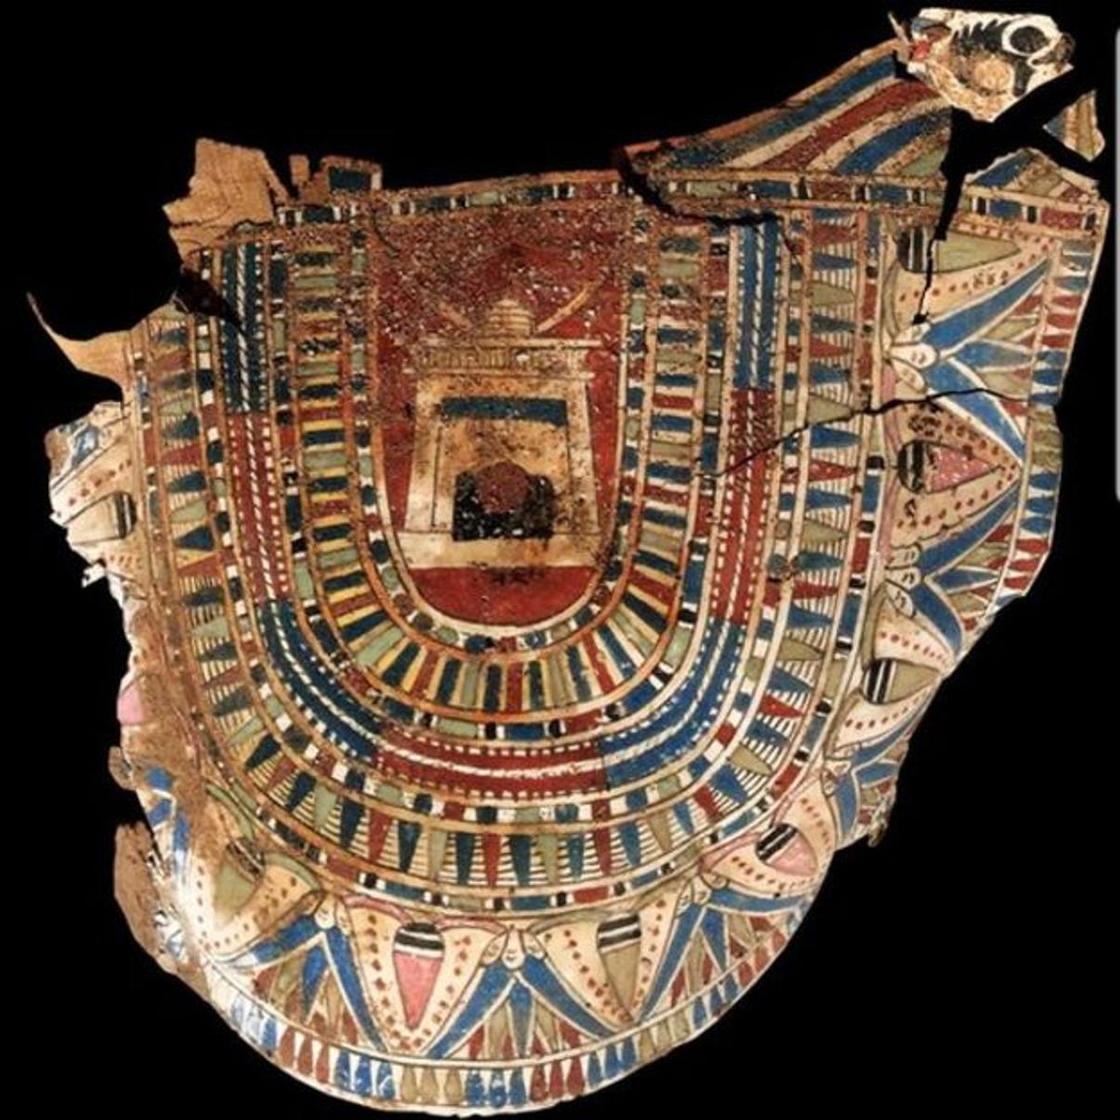 В Египте найдена нетронутая древняя гробница, в ней почти 30 мумий